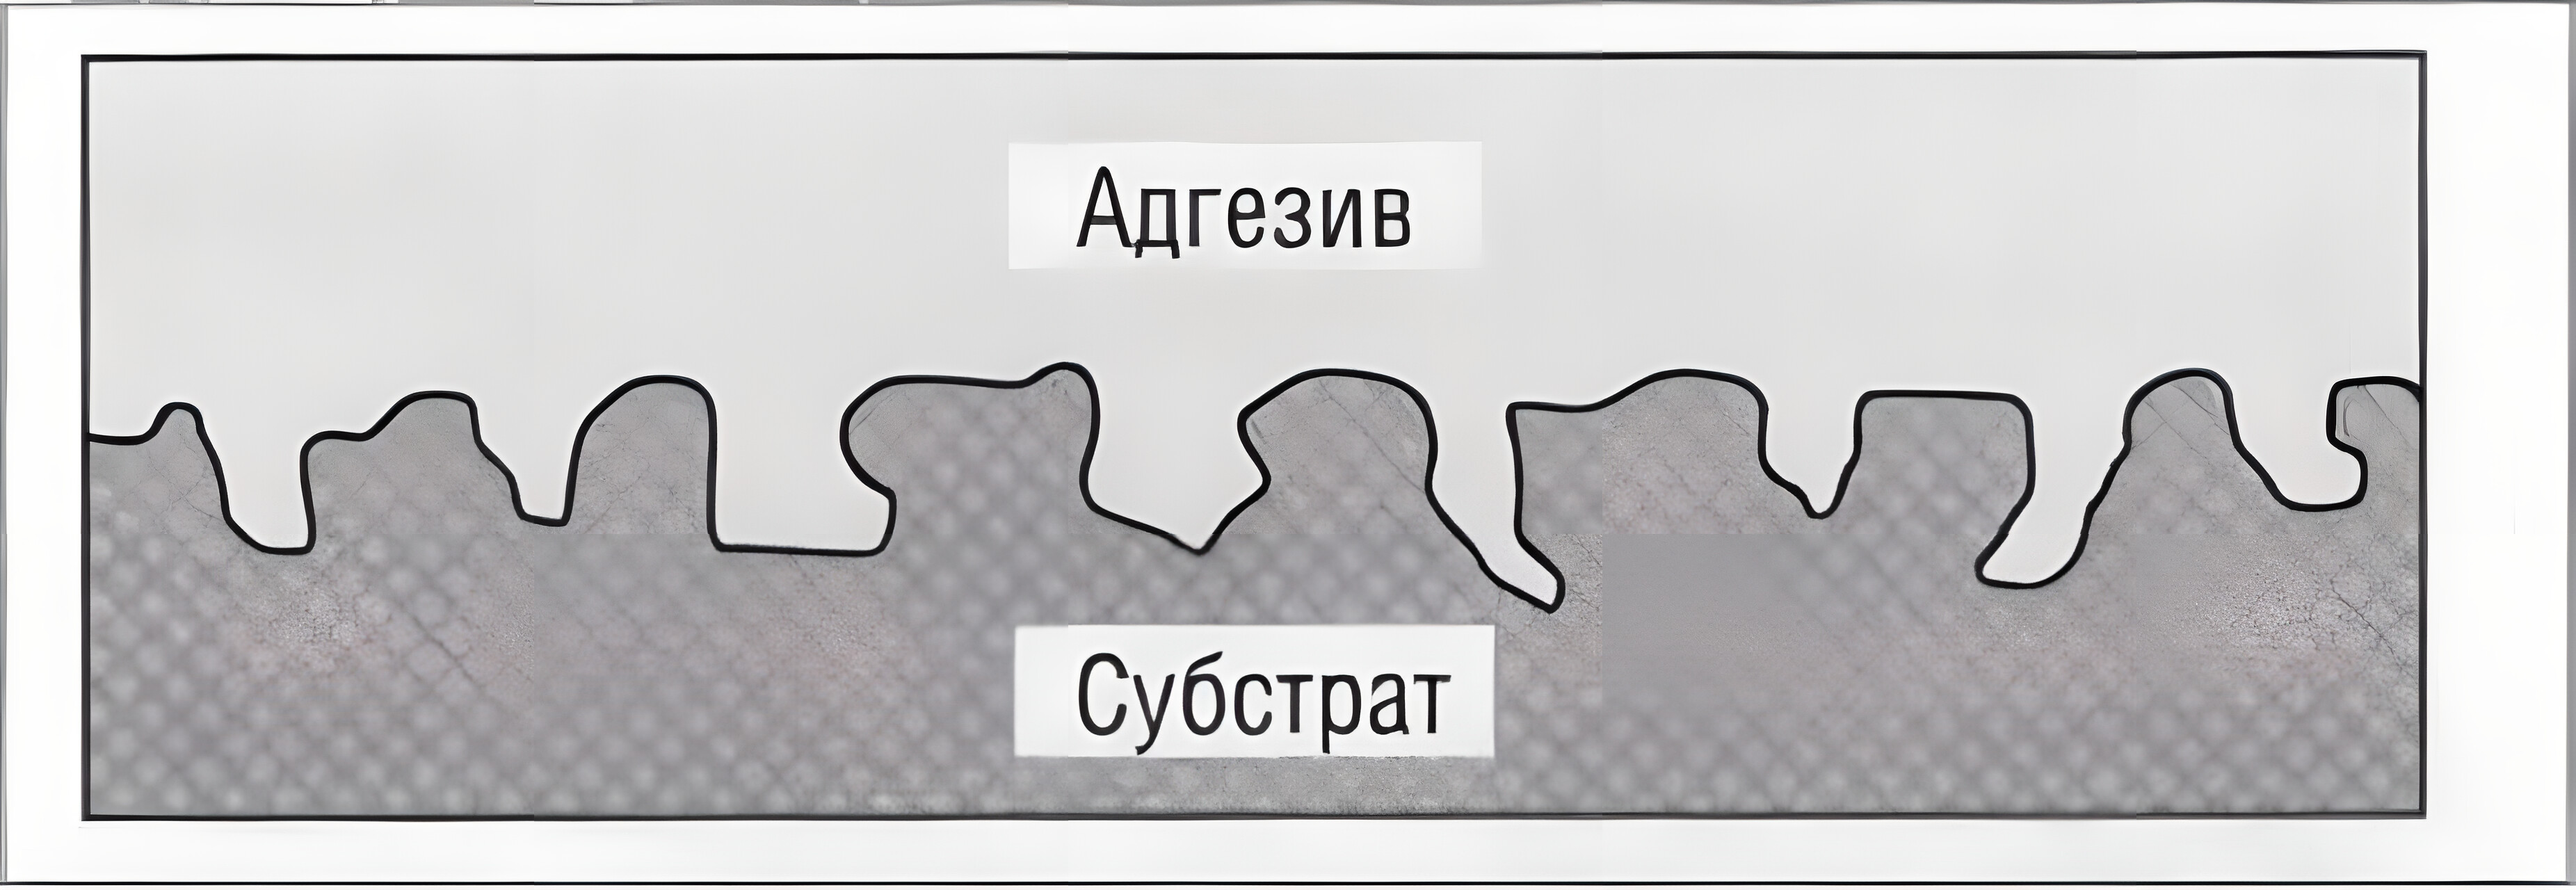 Механическое зацепление между адгезивом и субстратом на микроскопическом уровне